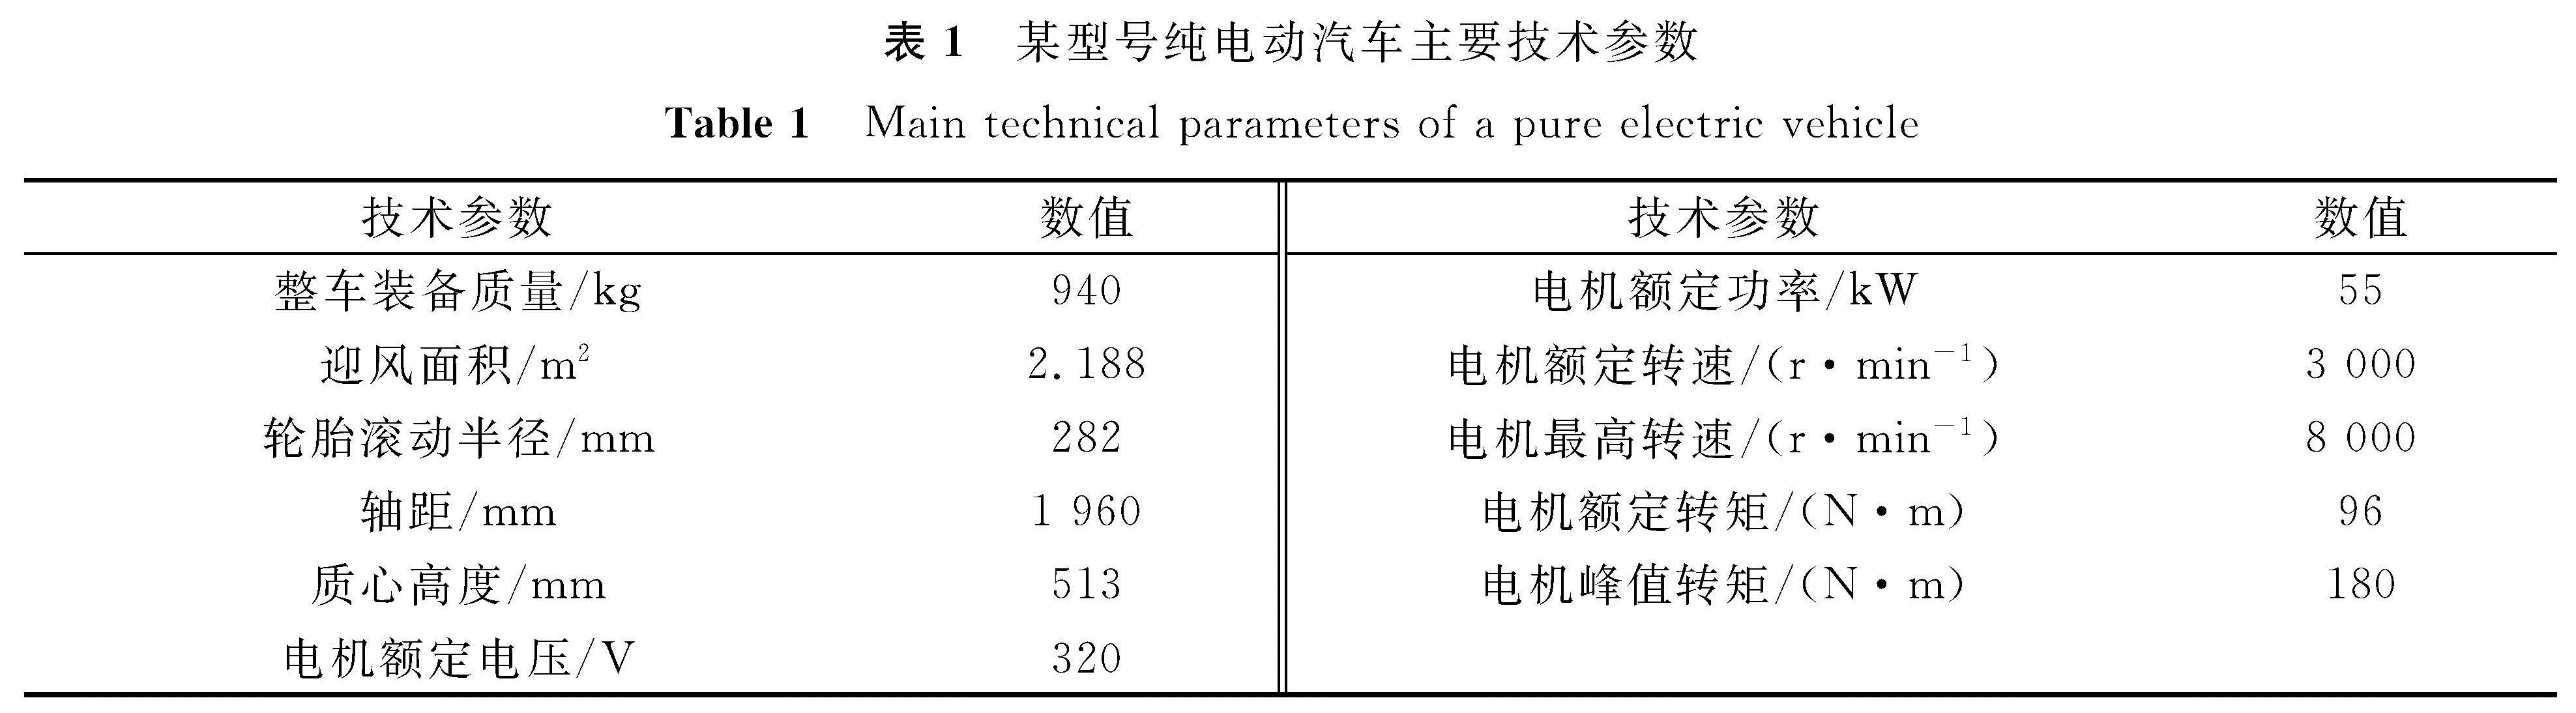 表1 某型号纯电动汽车主要技术参数<br/>Table 1 Main technical parameters of a pure electric vehicle